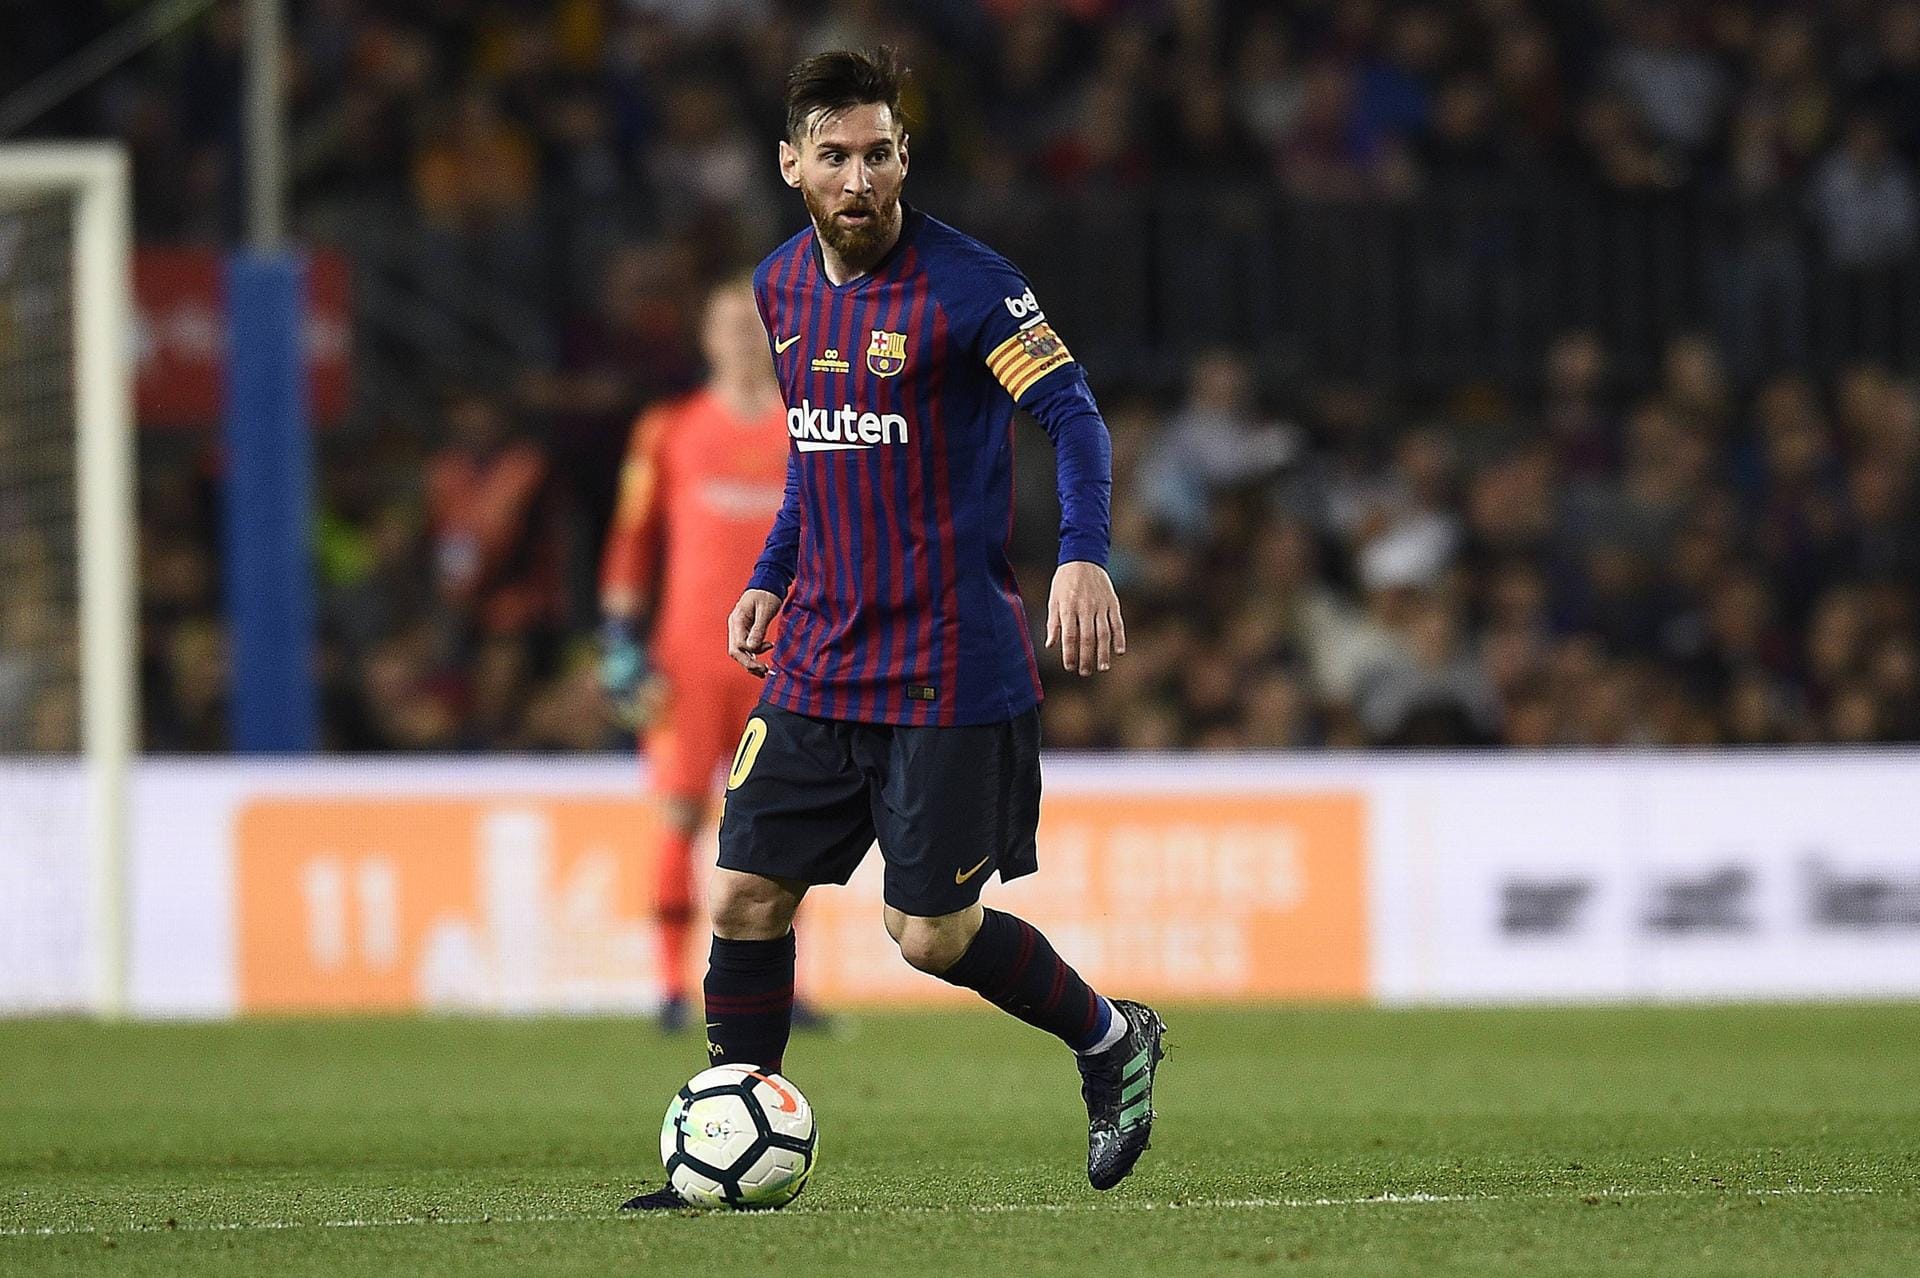 2. Platz: Lionel Messi vom FC Barcelona ist der bestbezahlte Fußballspieler der Welt. Mit einem Verdienst von 111 Millionen Dollar ist der Argentinier der erfolgreichste Sportler im Fußball.